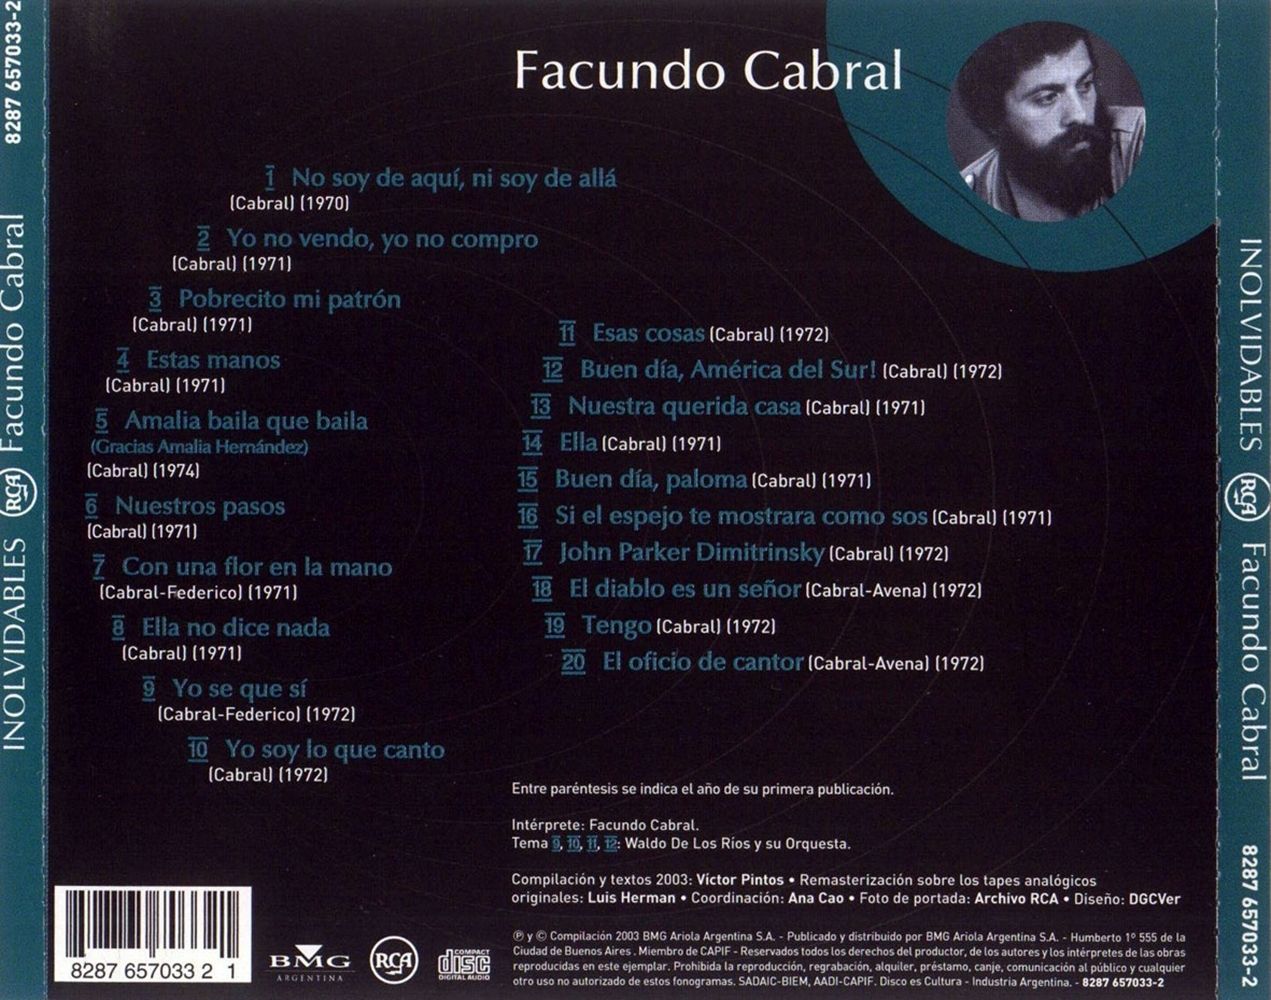 Back - Facundo Cabral: Discografia